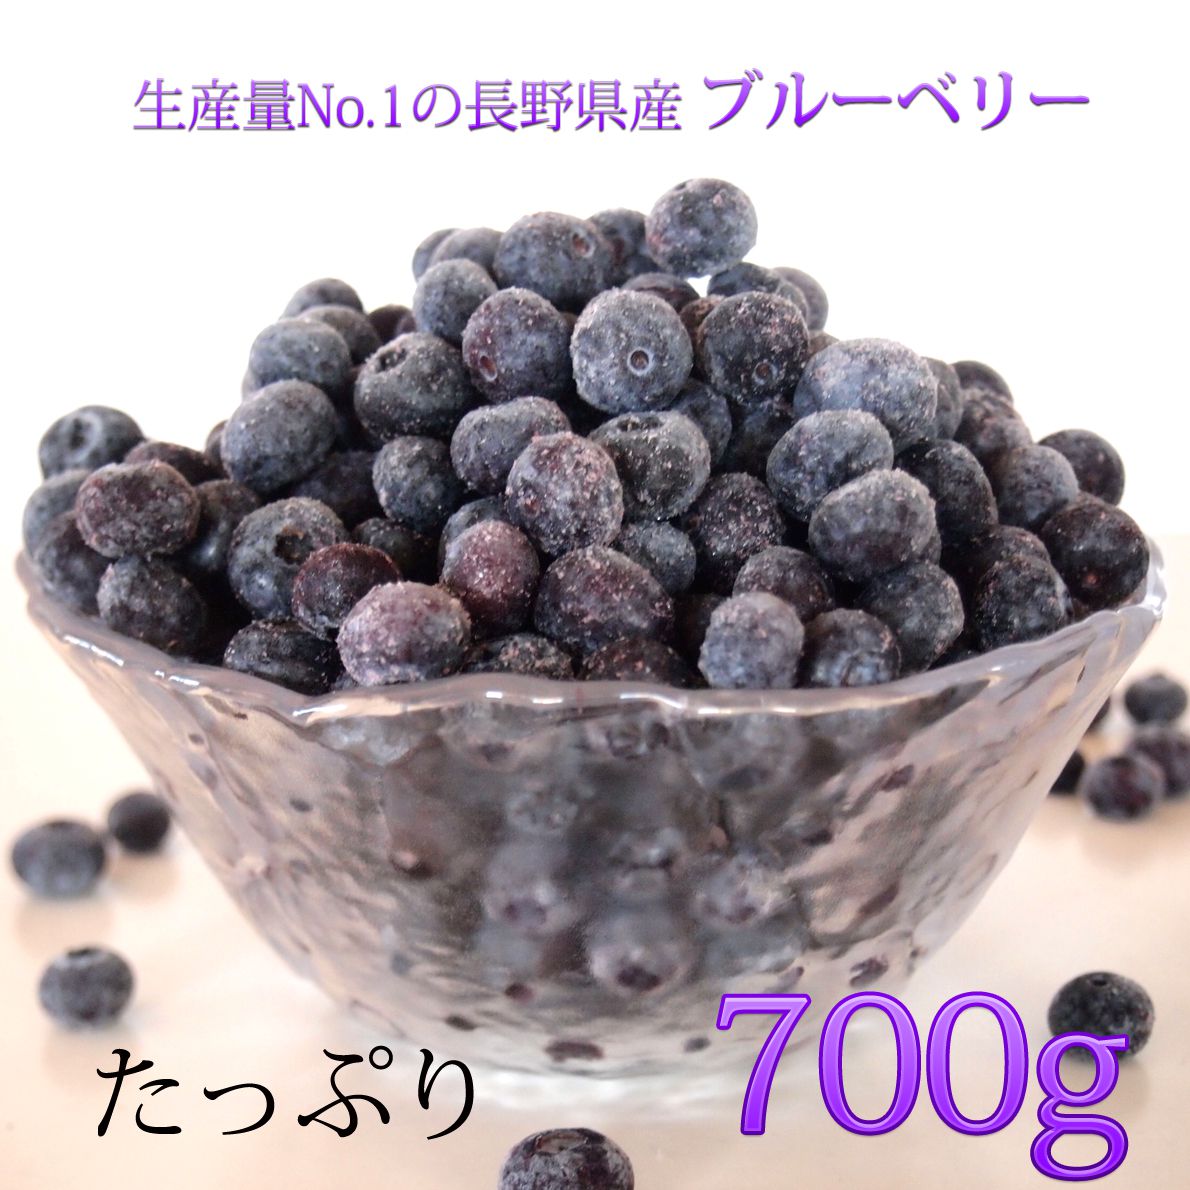 ブルーベリー 長野県産 冷凍 フルーツ 果物 大容量 700g スムージー ジャムなどに わらいみらい